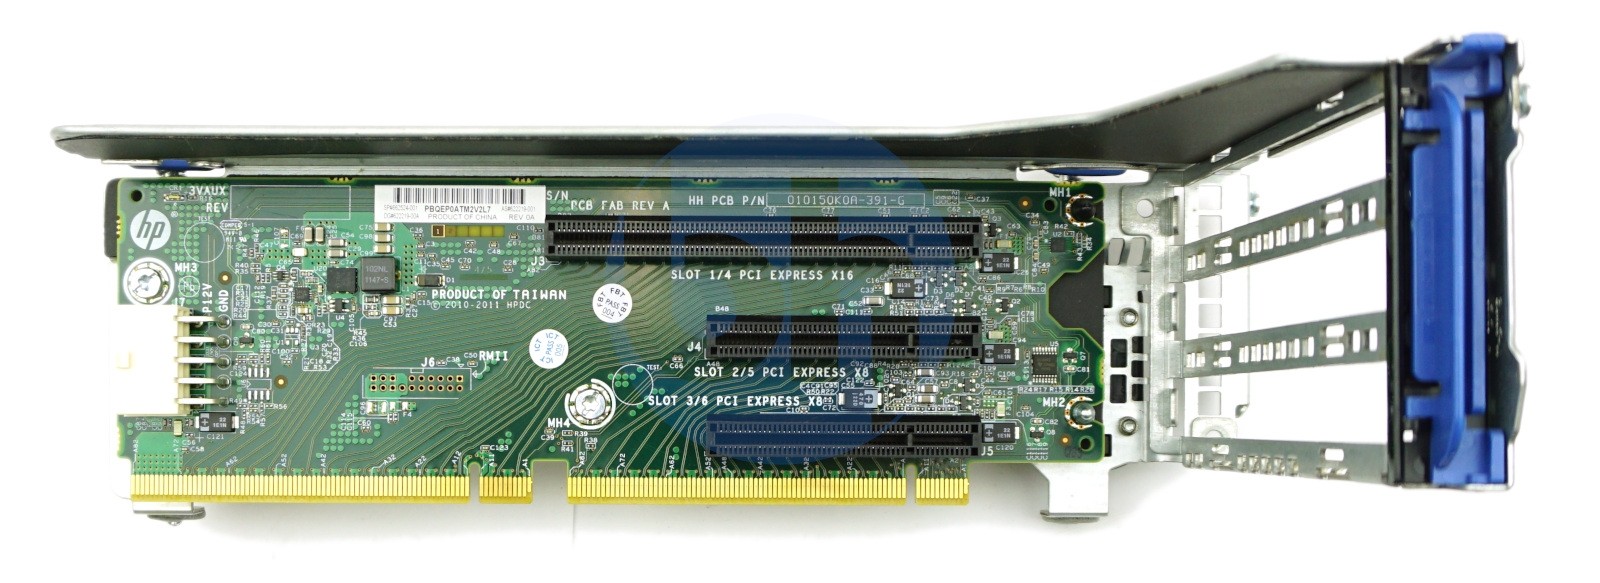 HP (653205-B21) ProLiant DL380p/DL385p Gen8 - 3 Slot PCIe Riser (709860